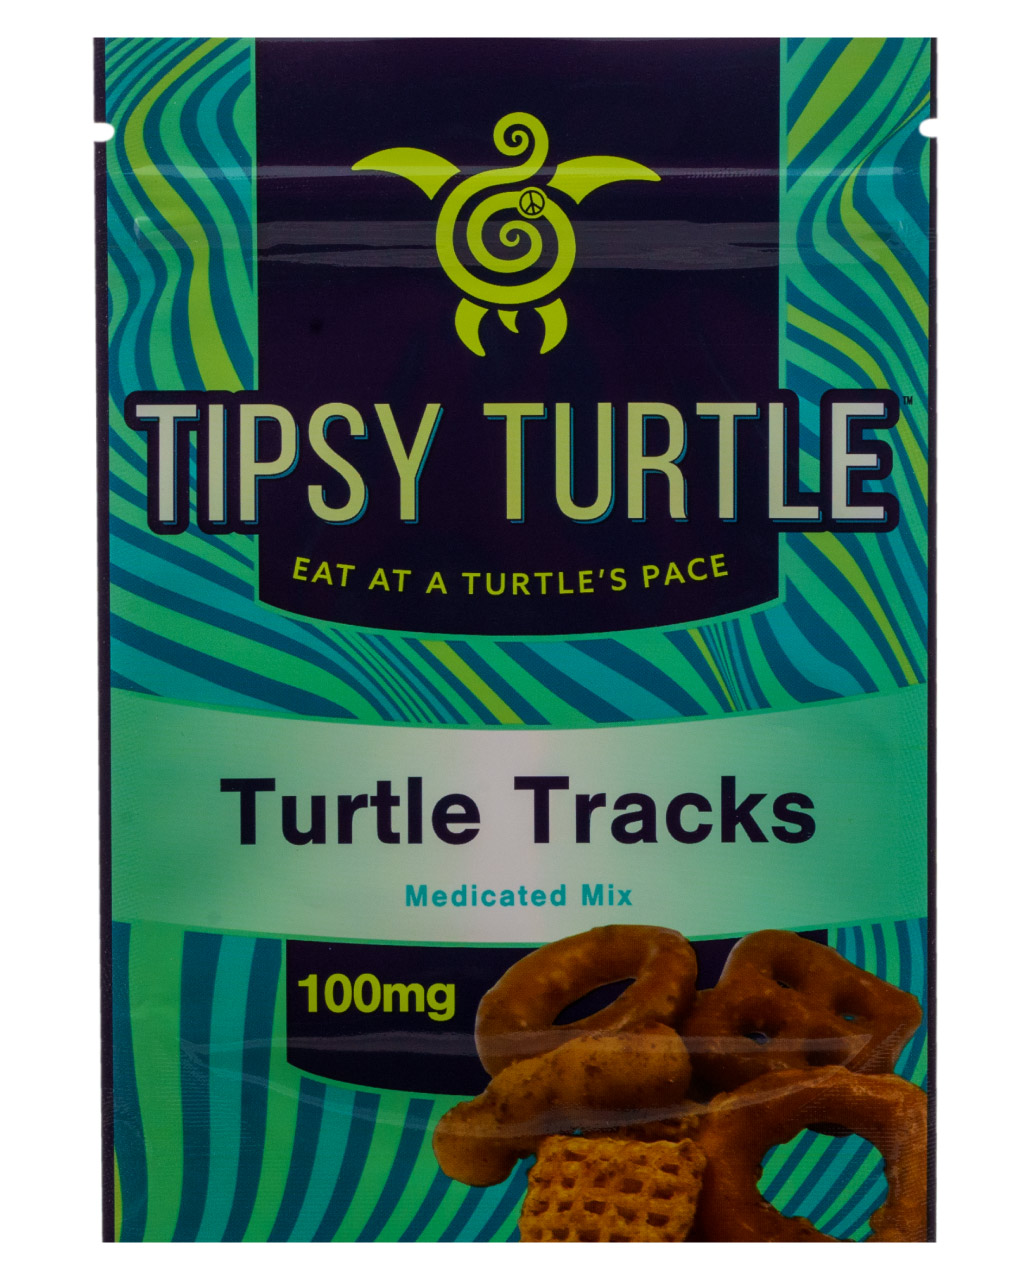 Tipsy-Turtle-Turtle-Tracks